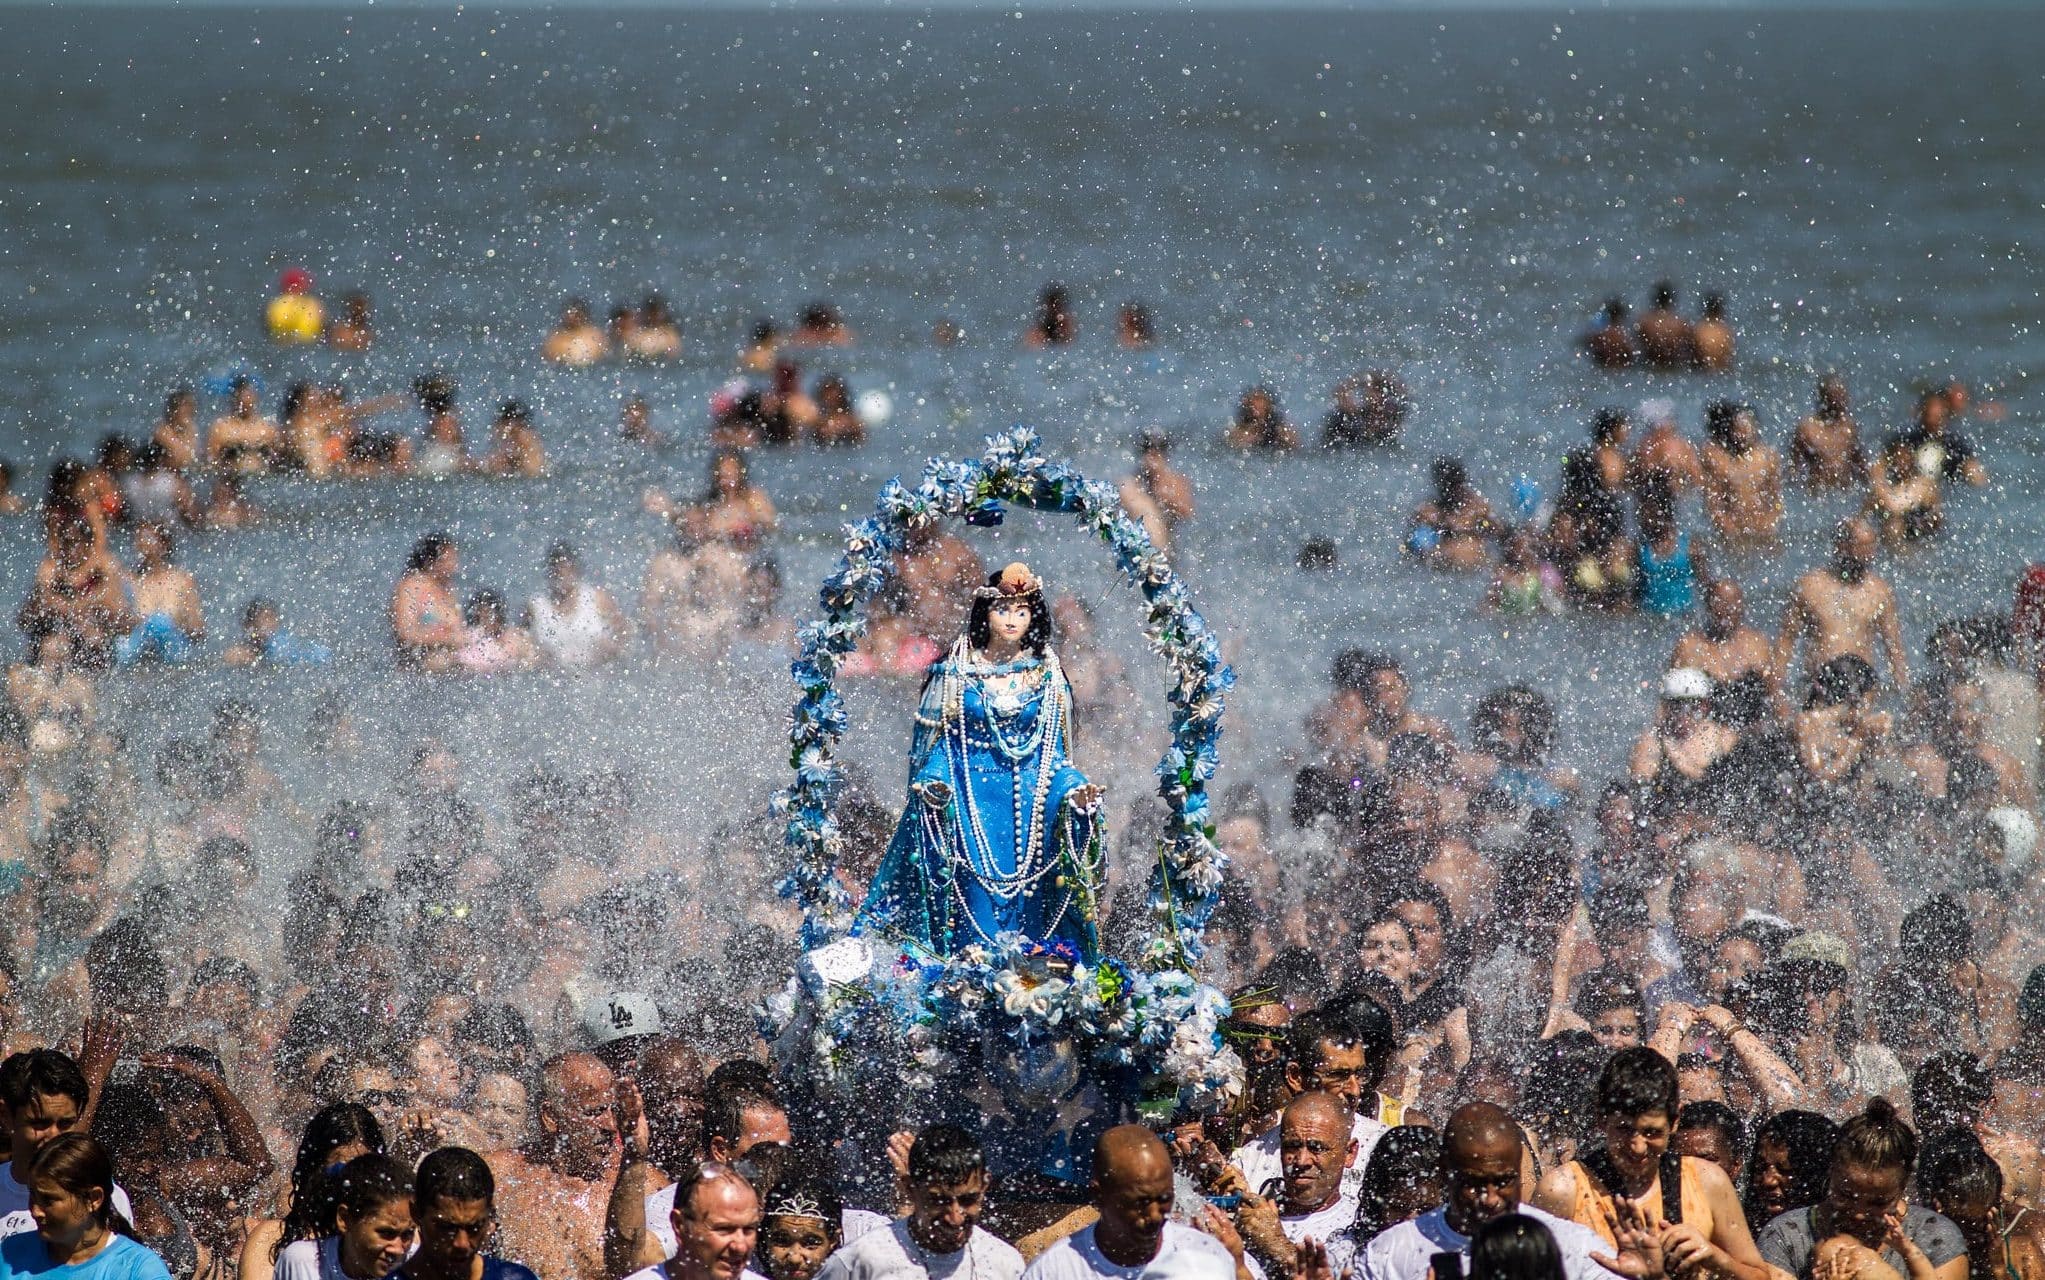 Uma estátua de Iemanjá sendo erguida em uma celebração à Deusa.